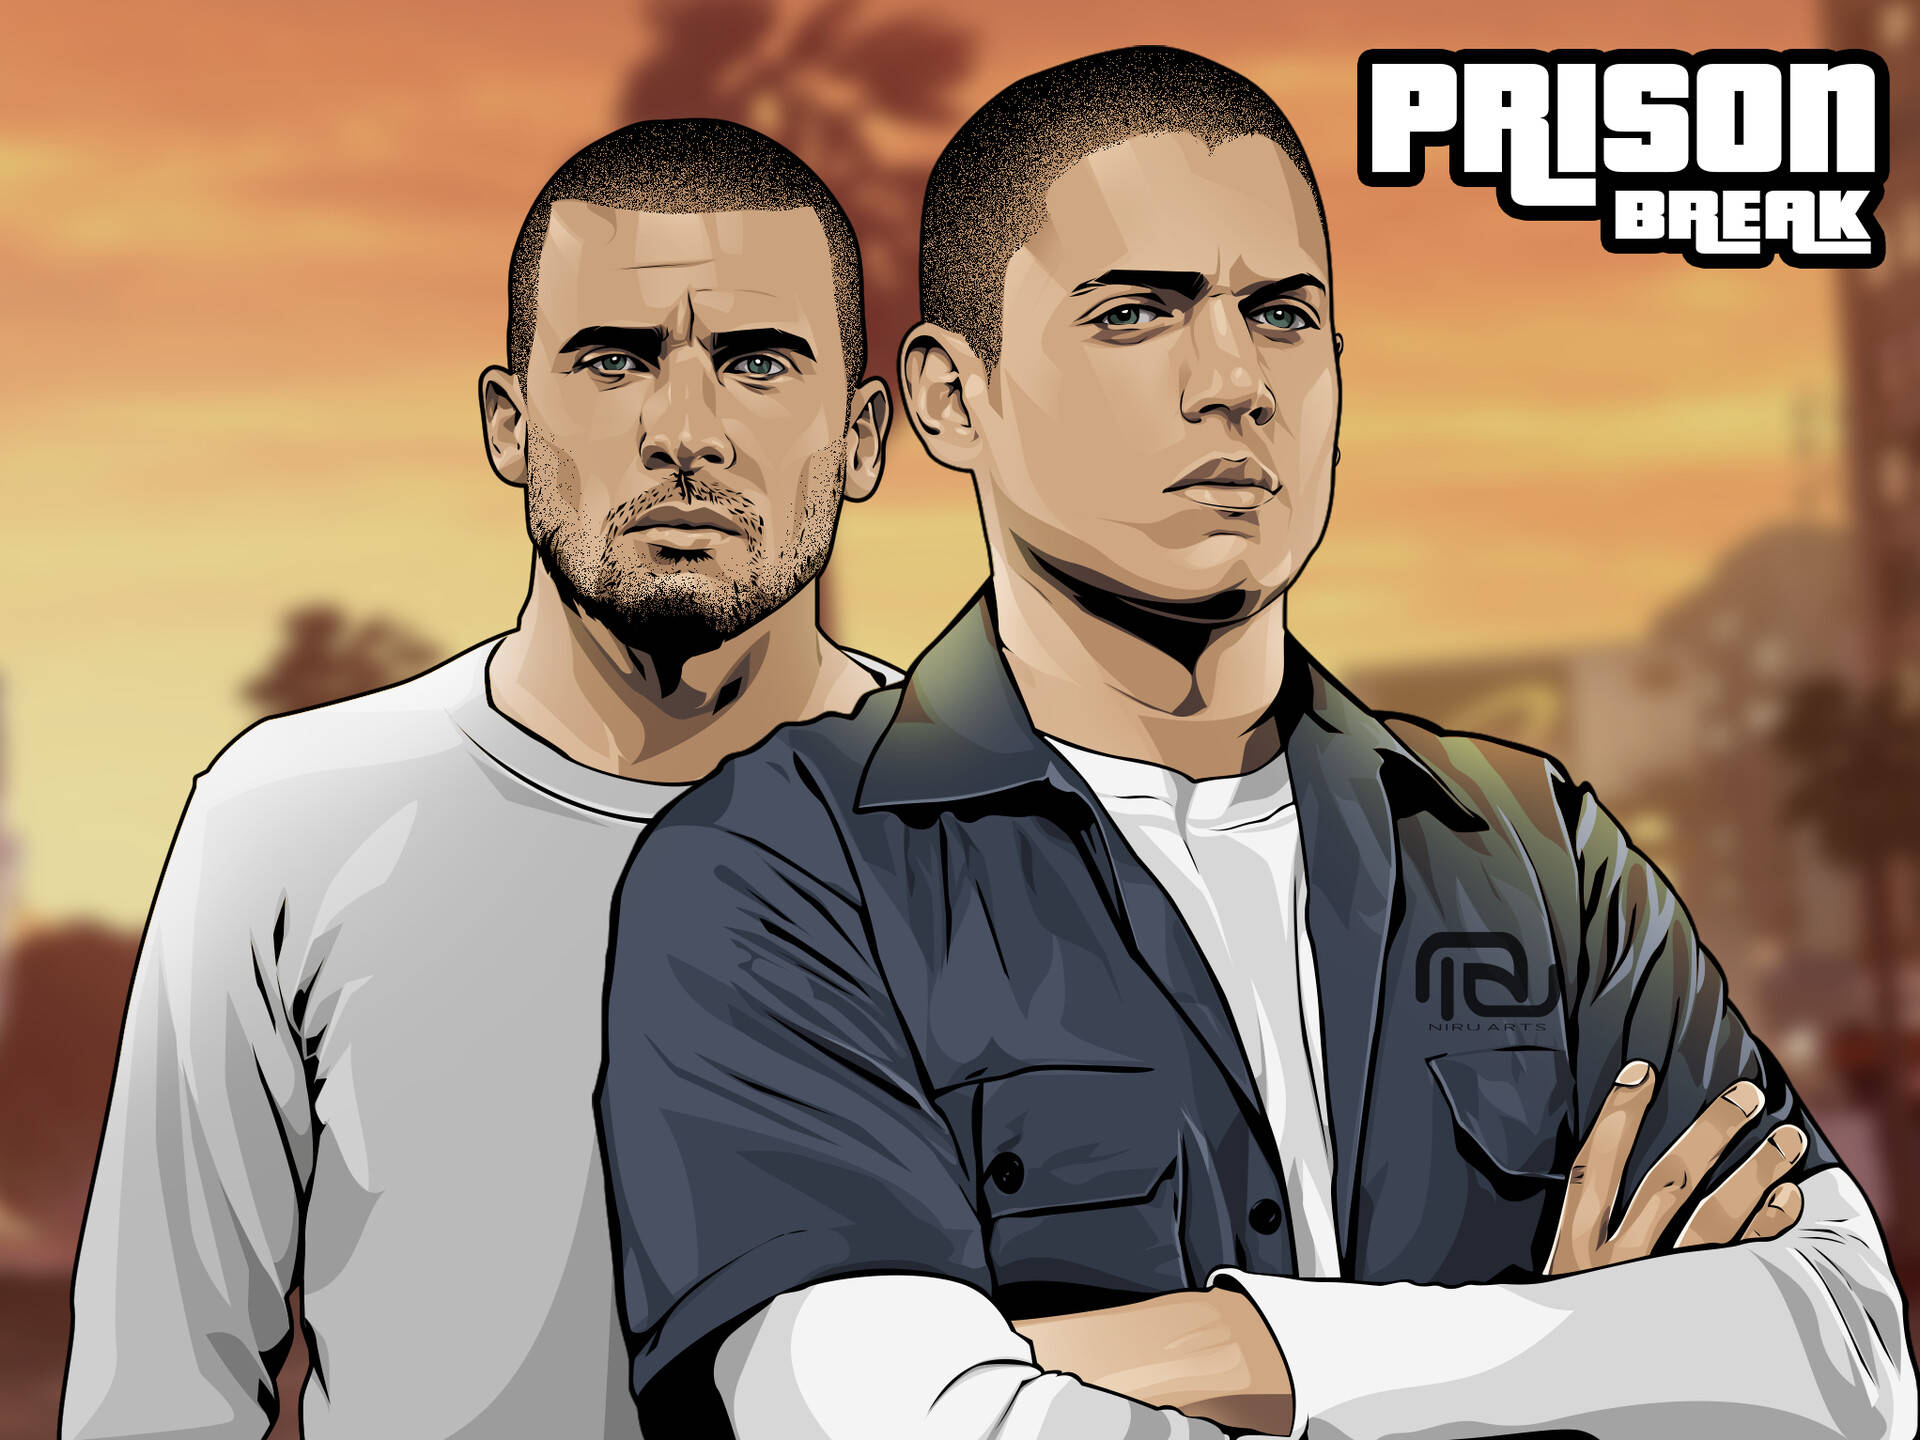 Prison Break Digital Graphic Cover Wallpaper